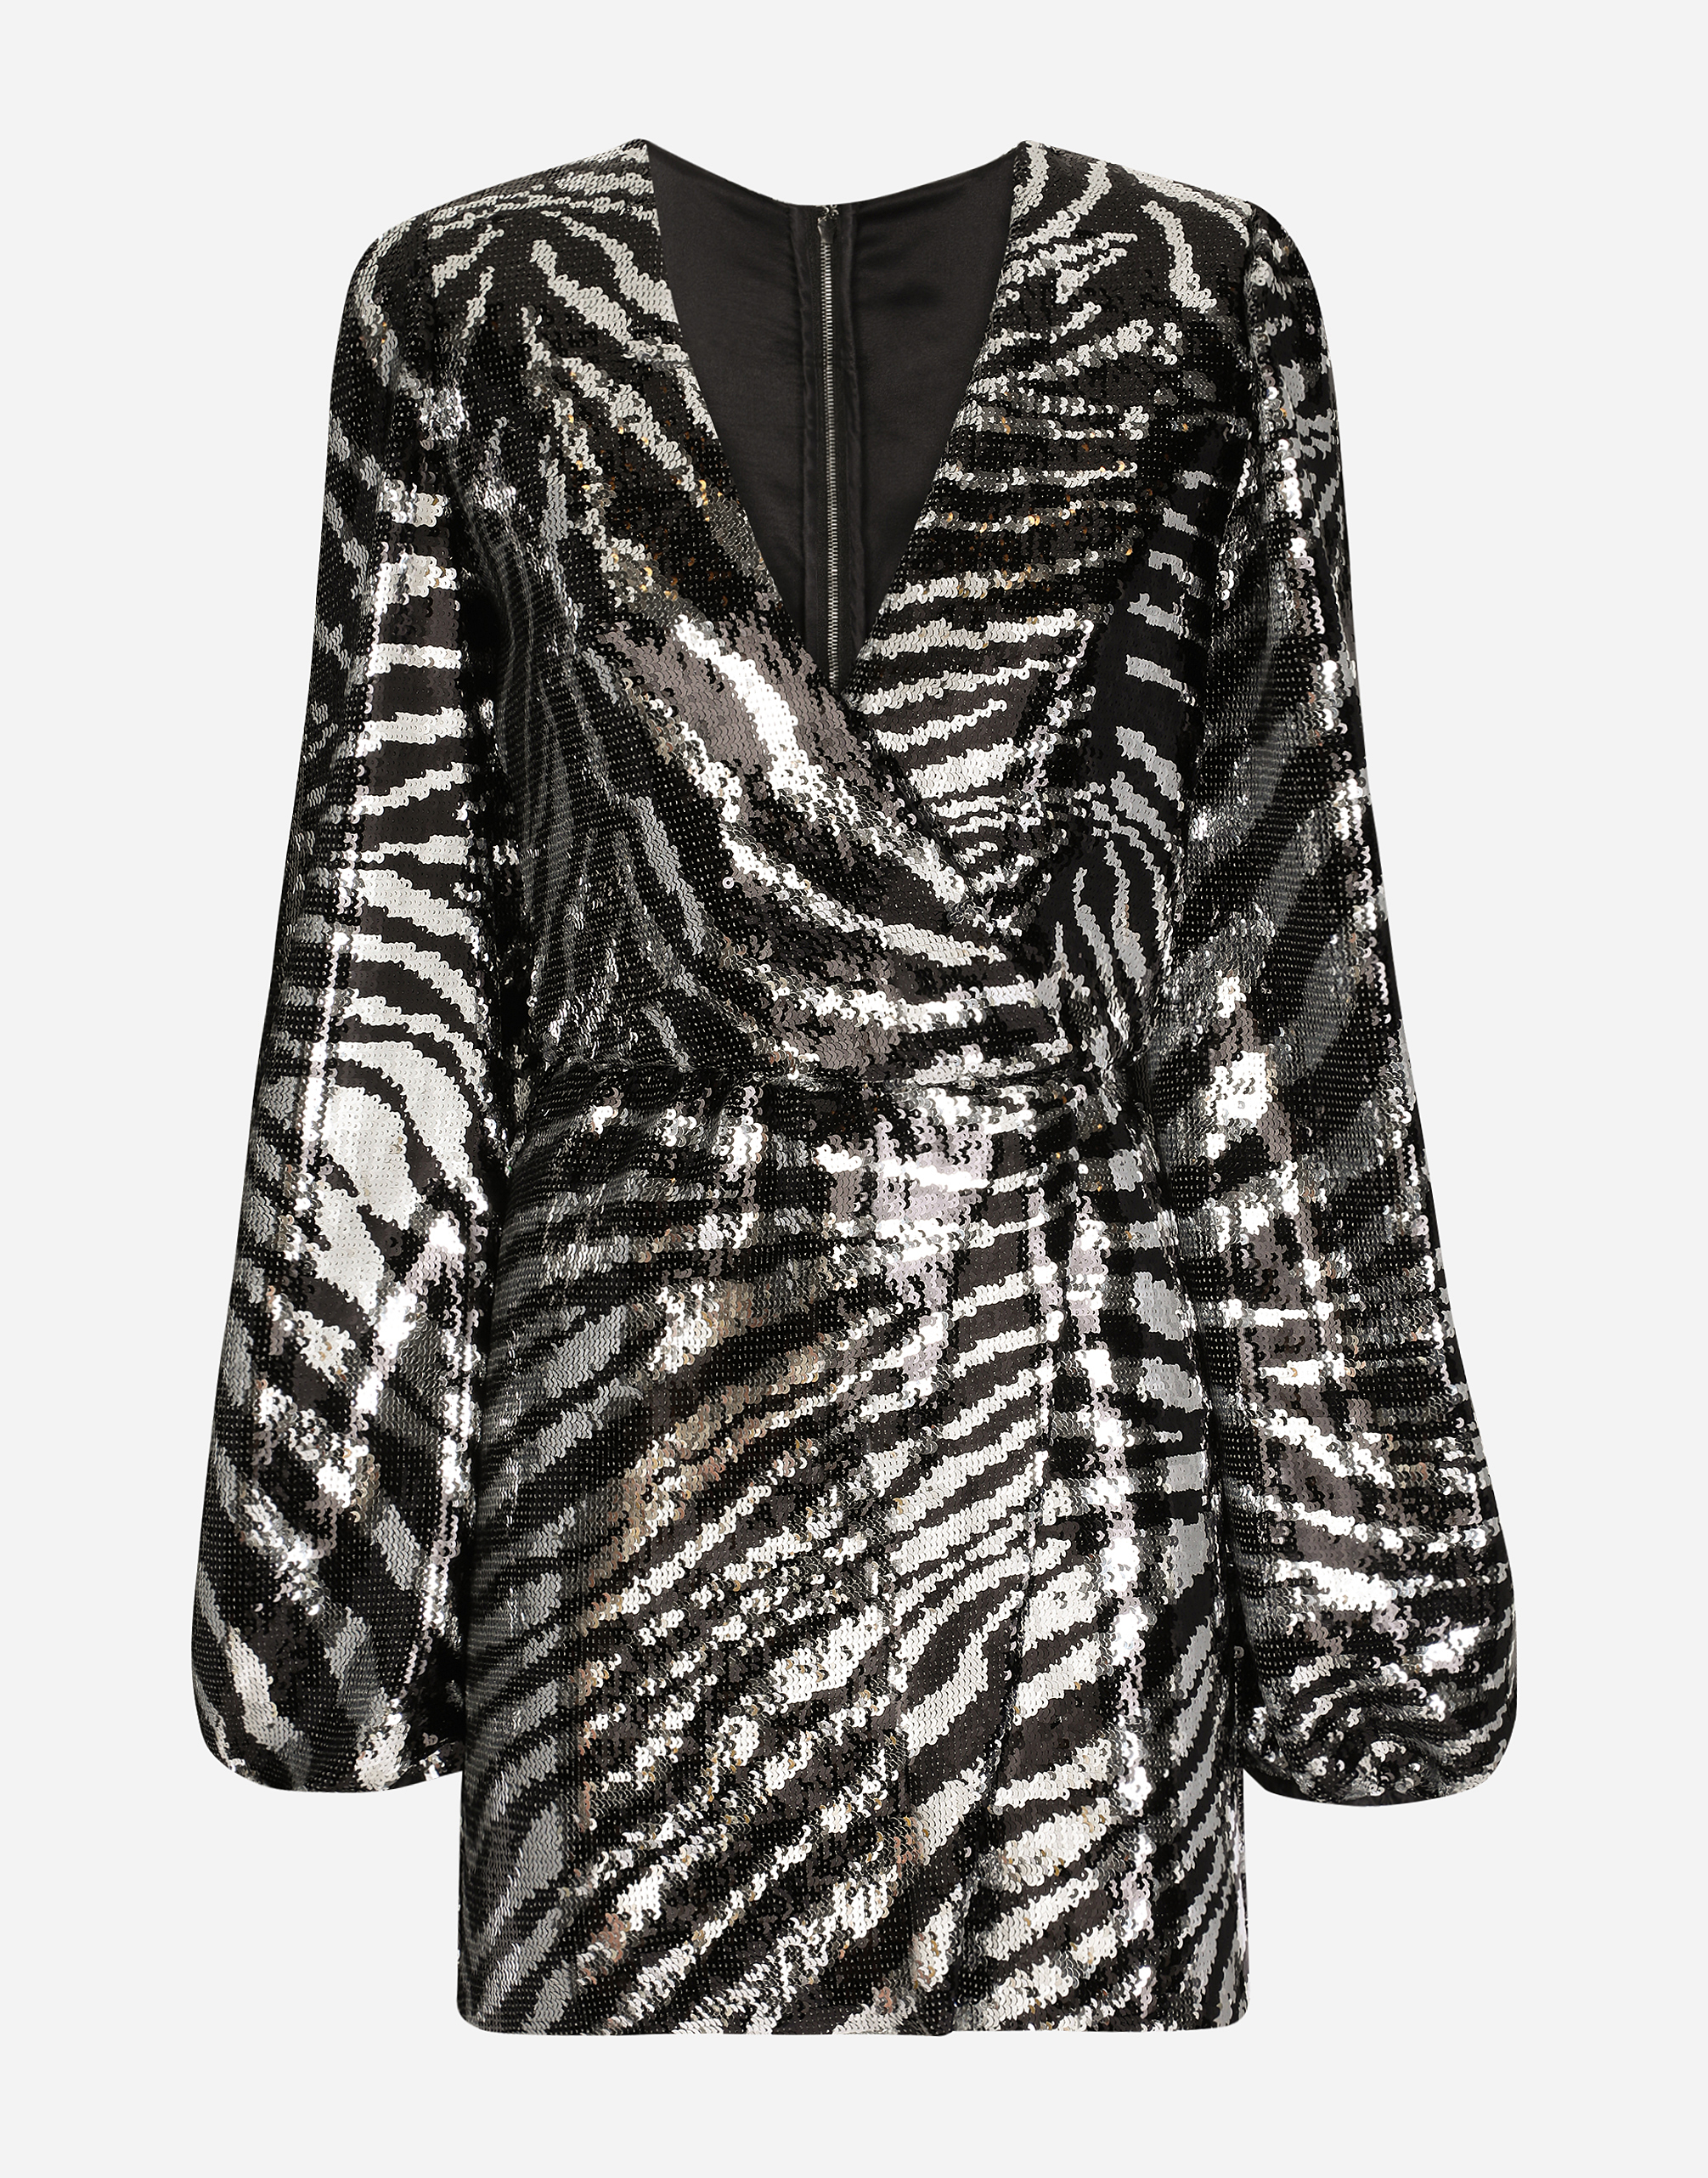 Dolce & Gabbana Short sequined wrap dress